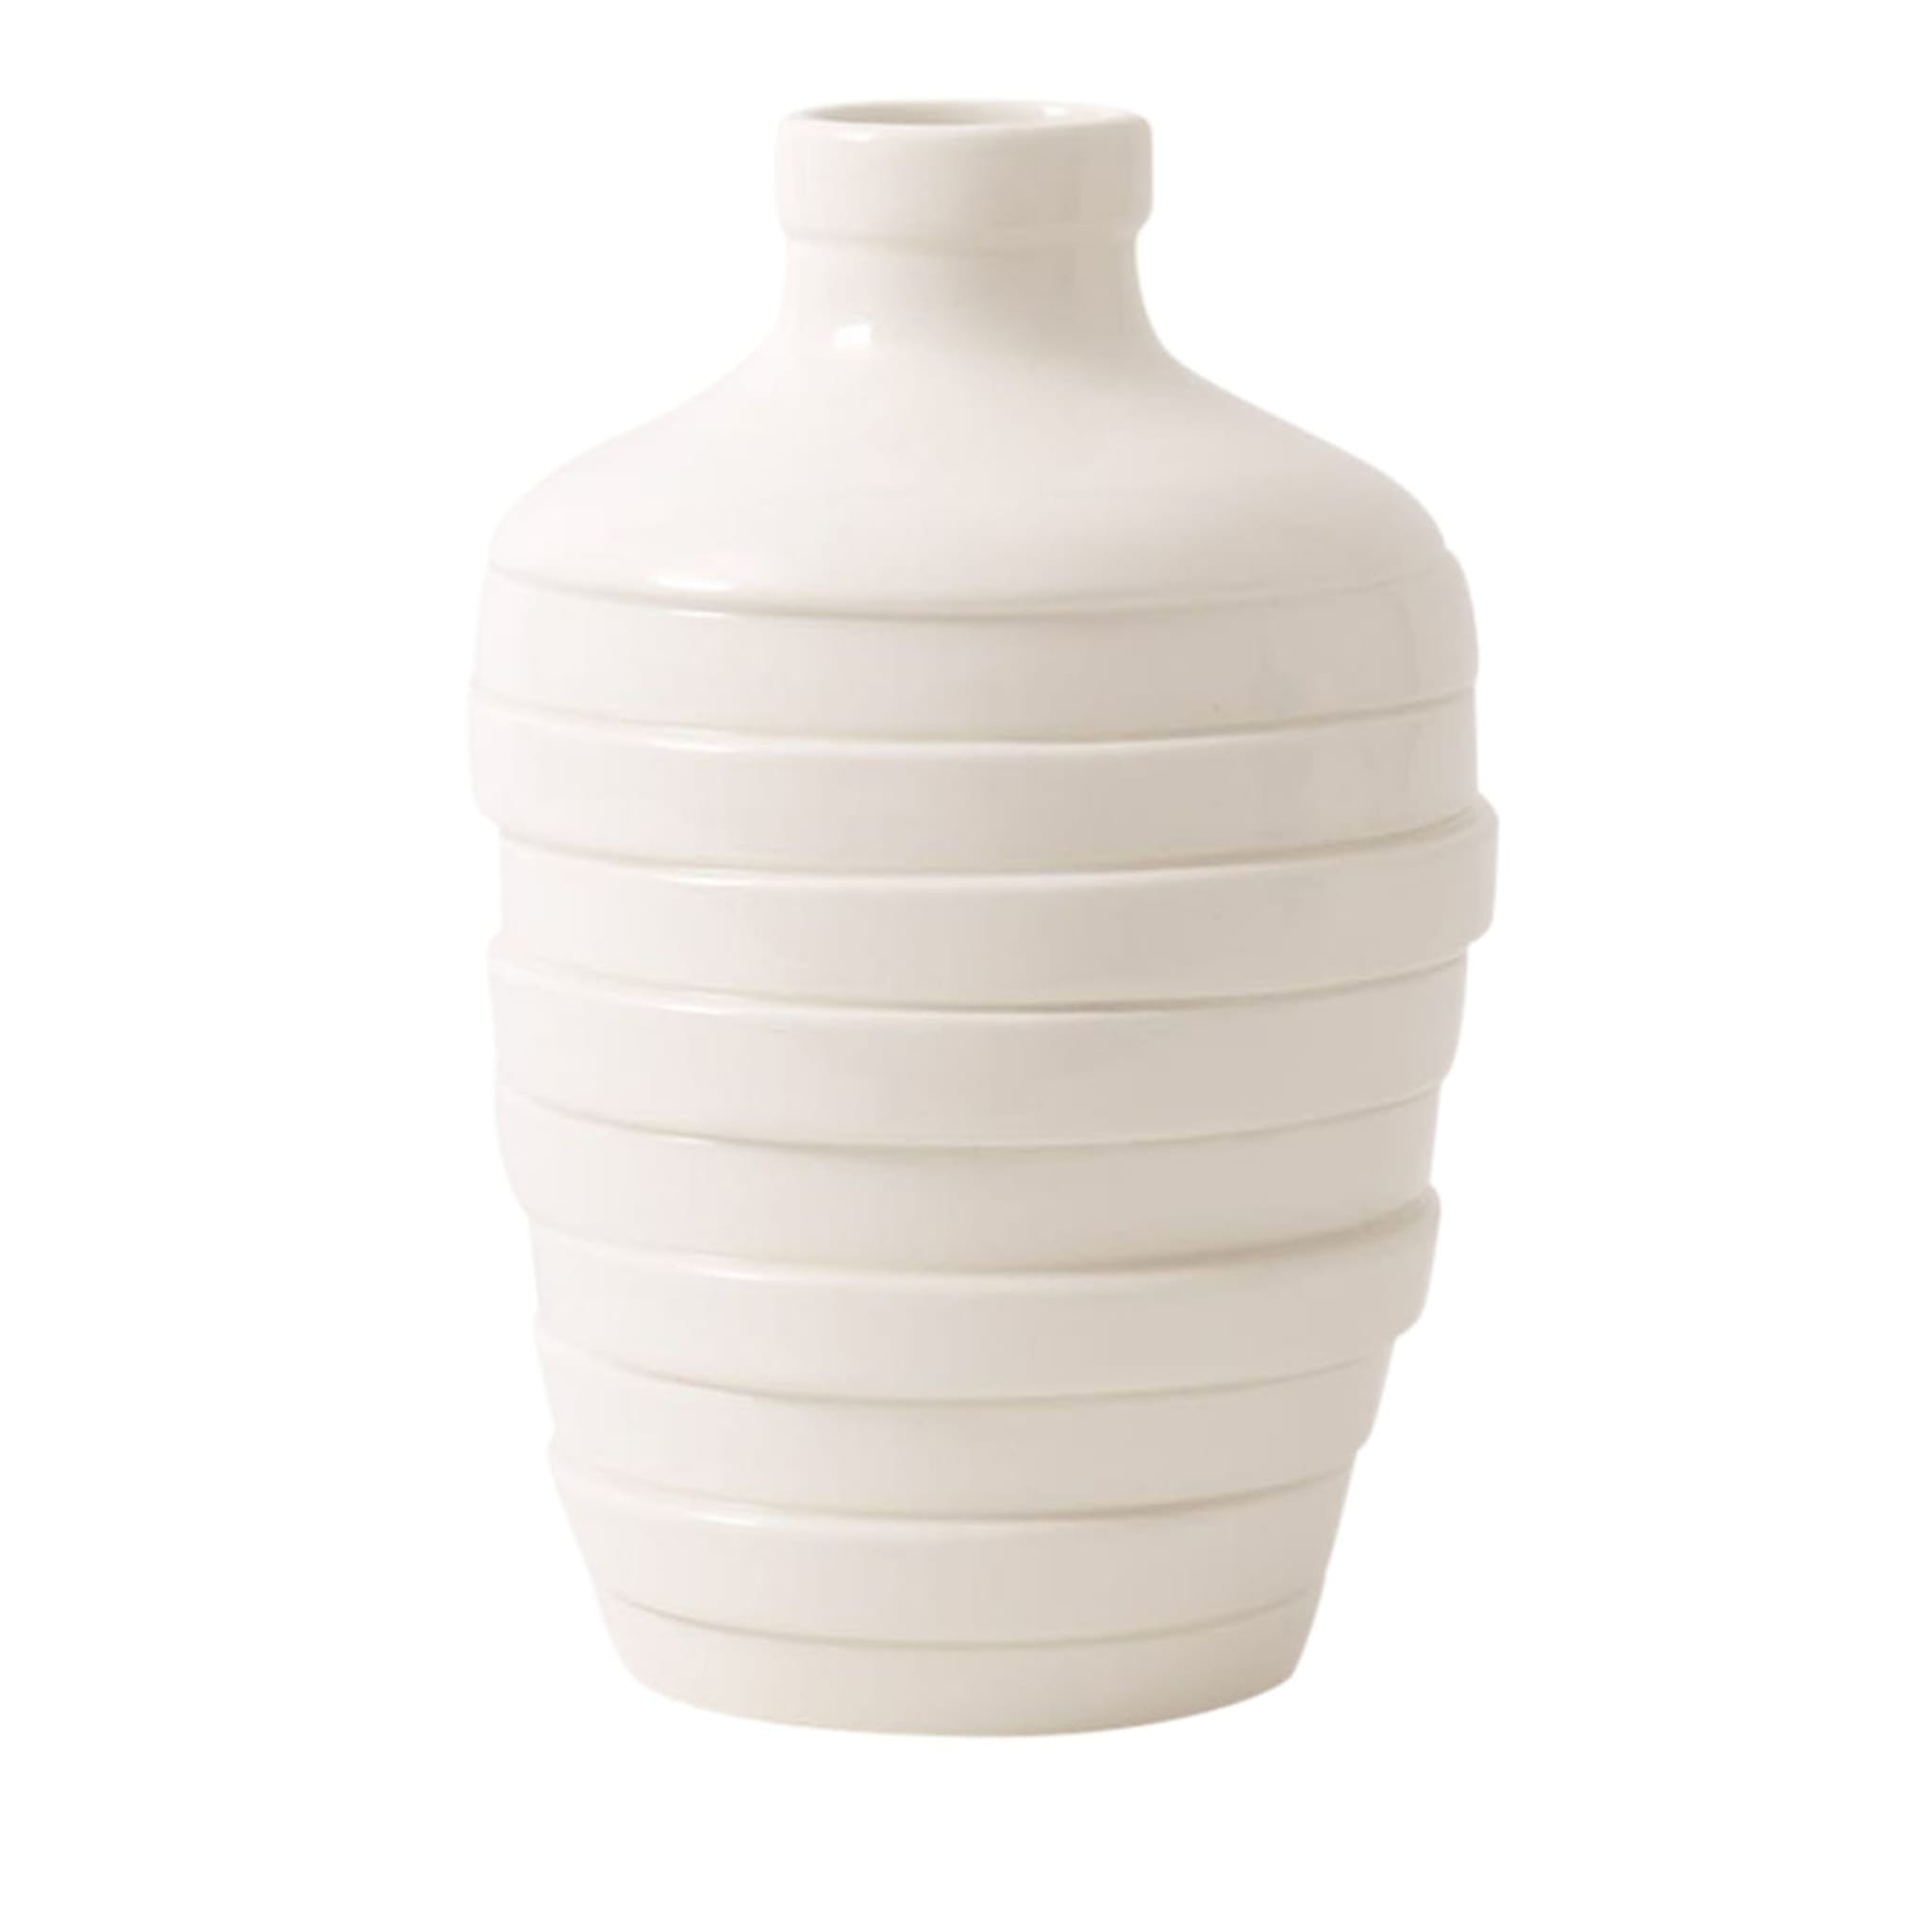 Gioia Large White Vase - Main view